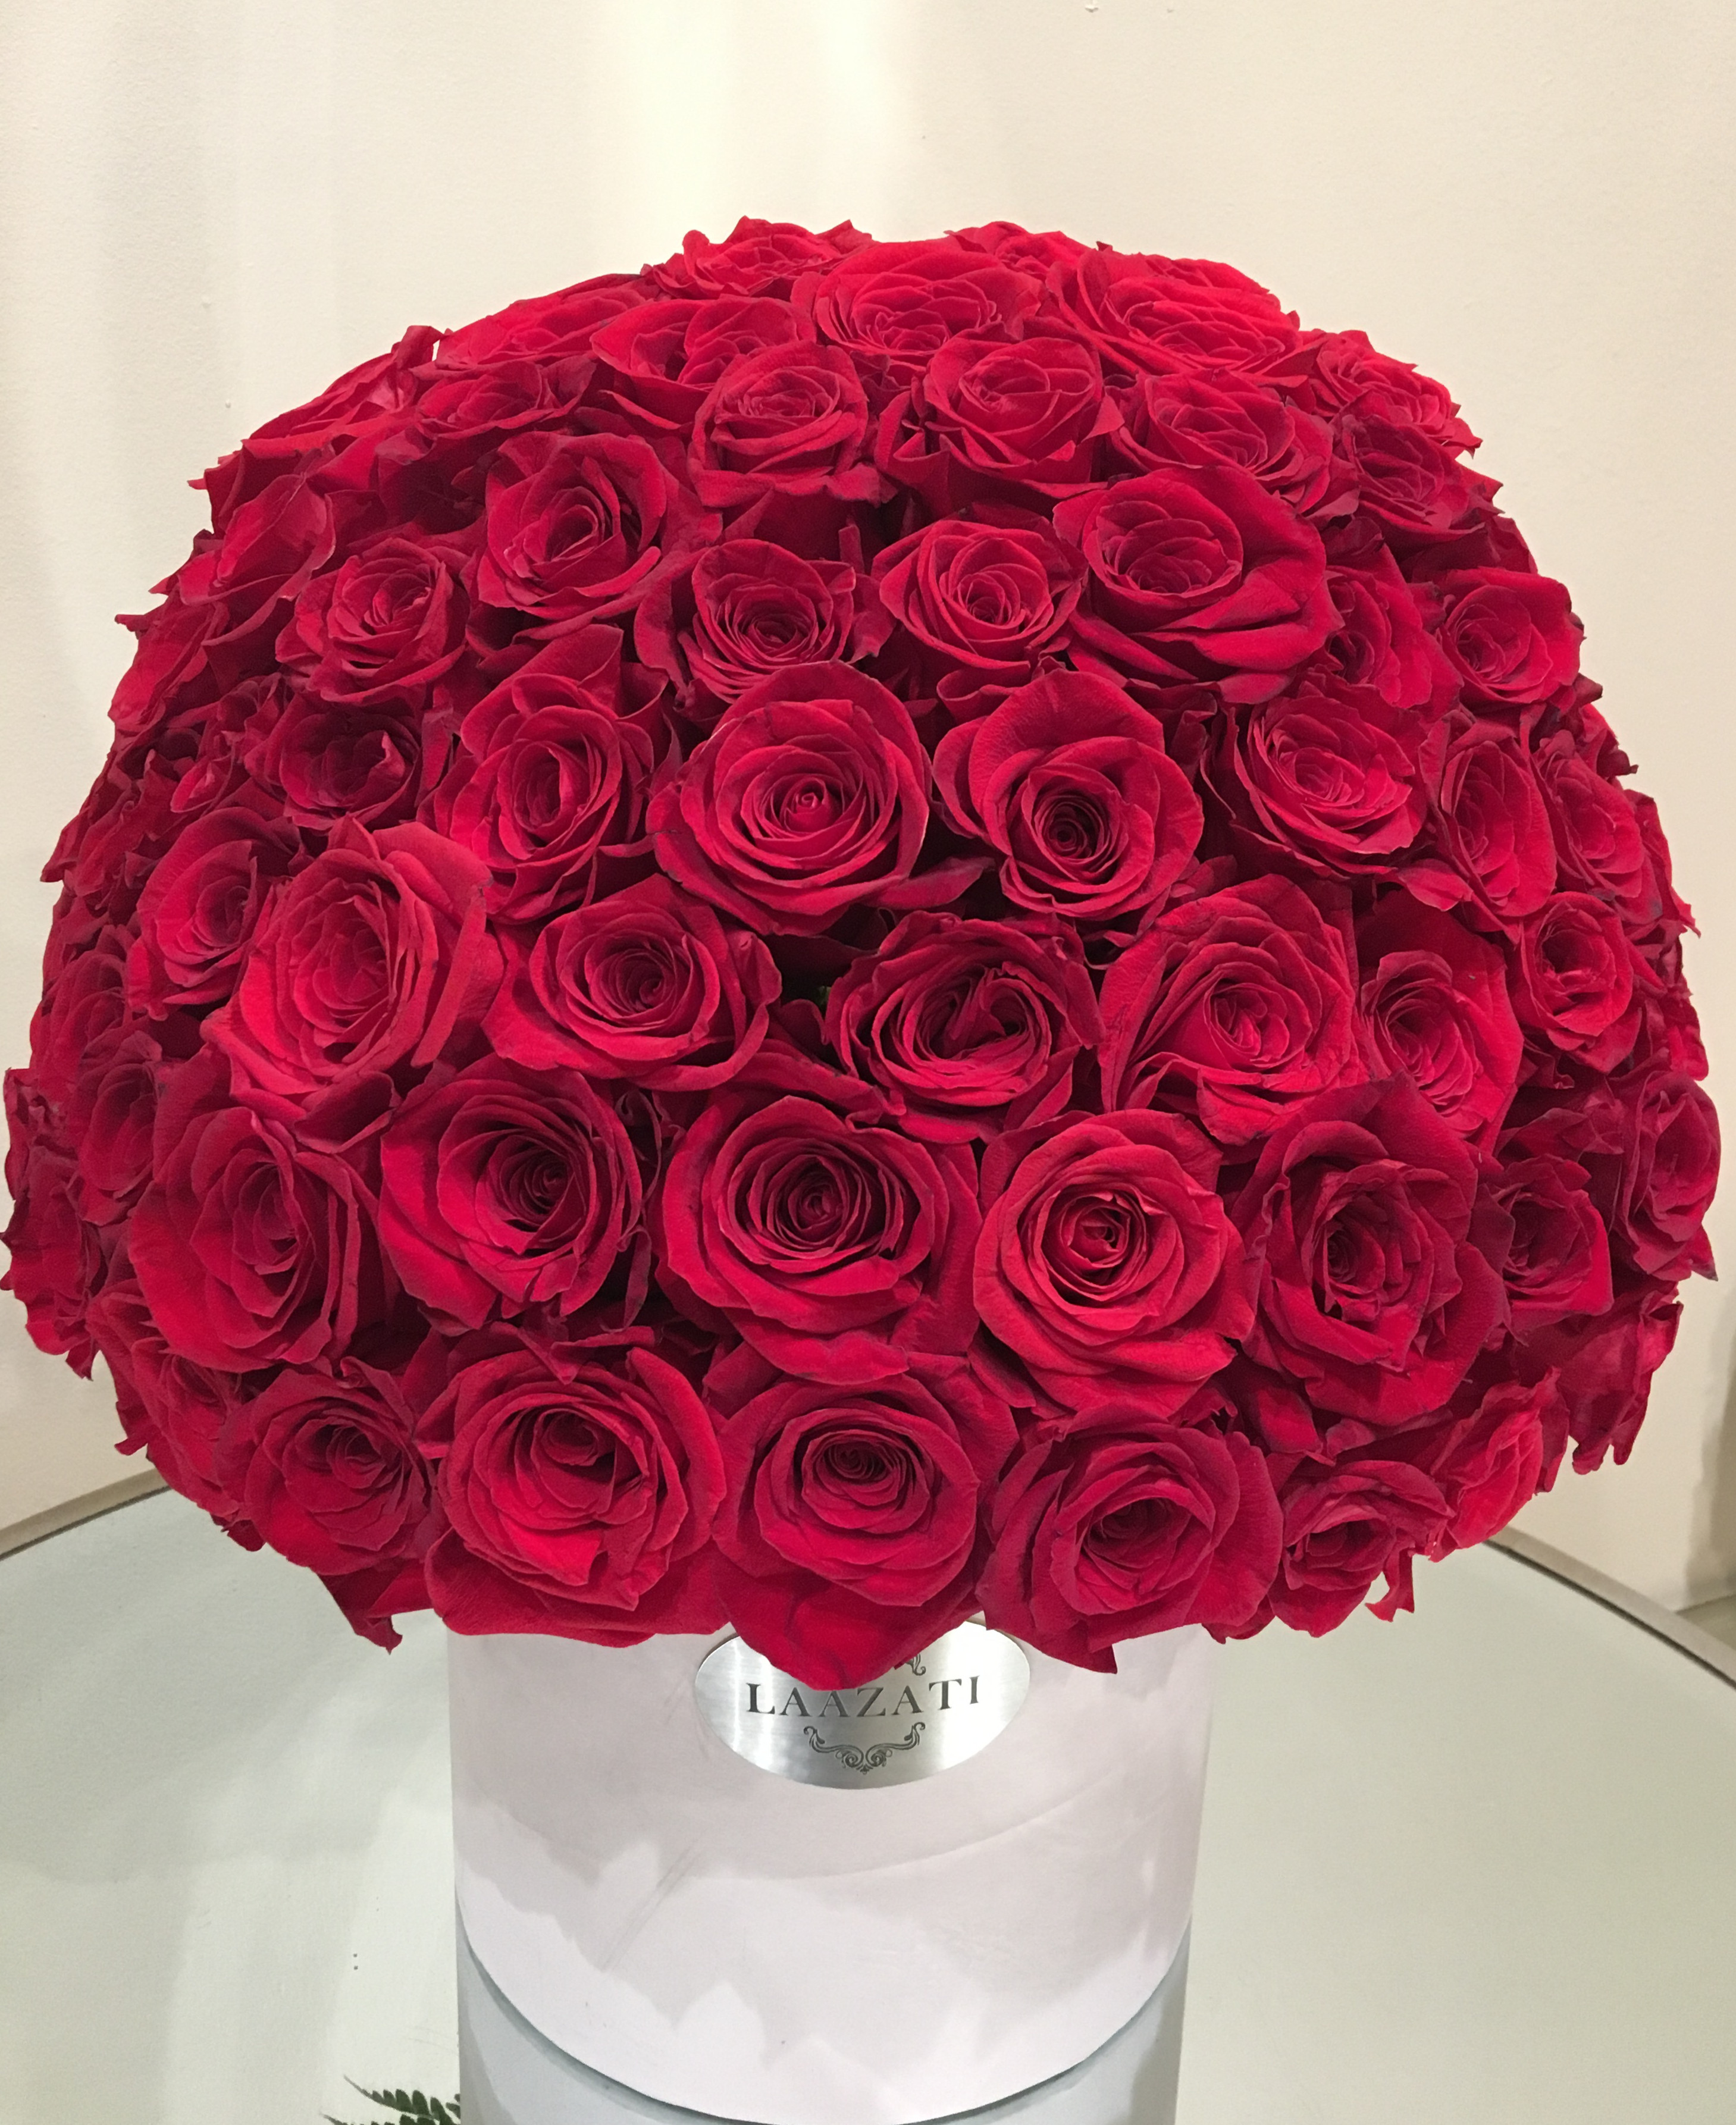 Classic Red Roses Box in Glendale, CA | Laazati